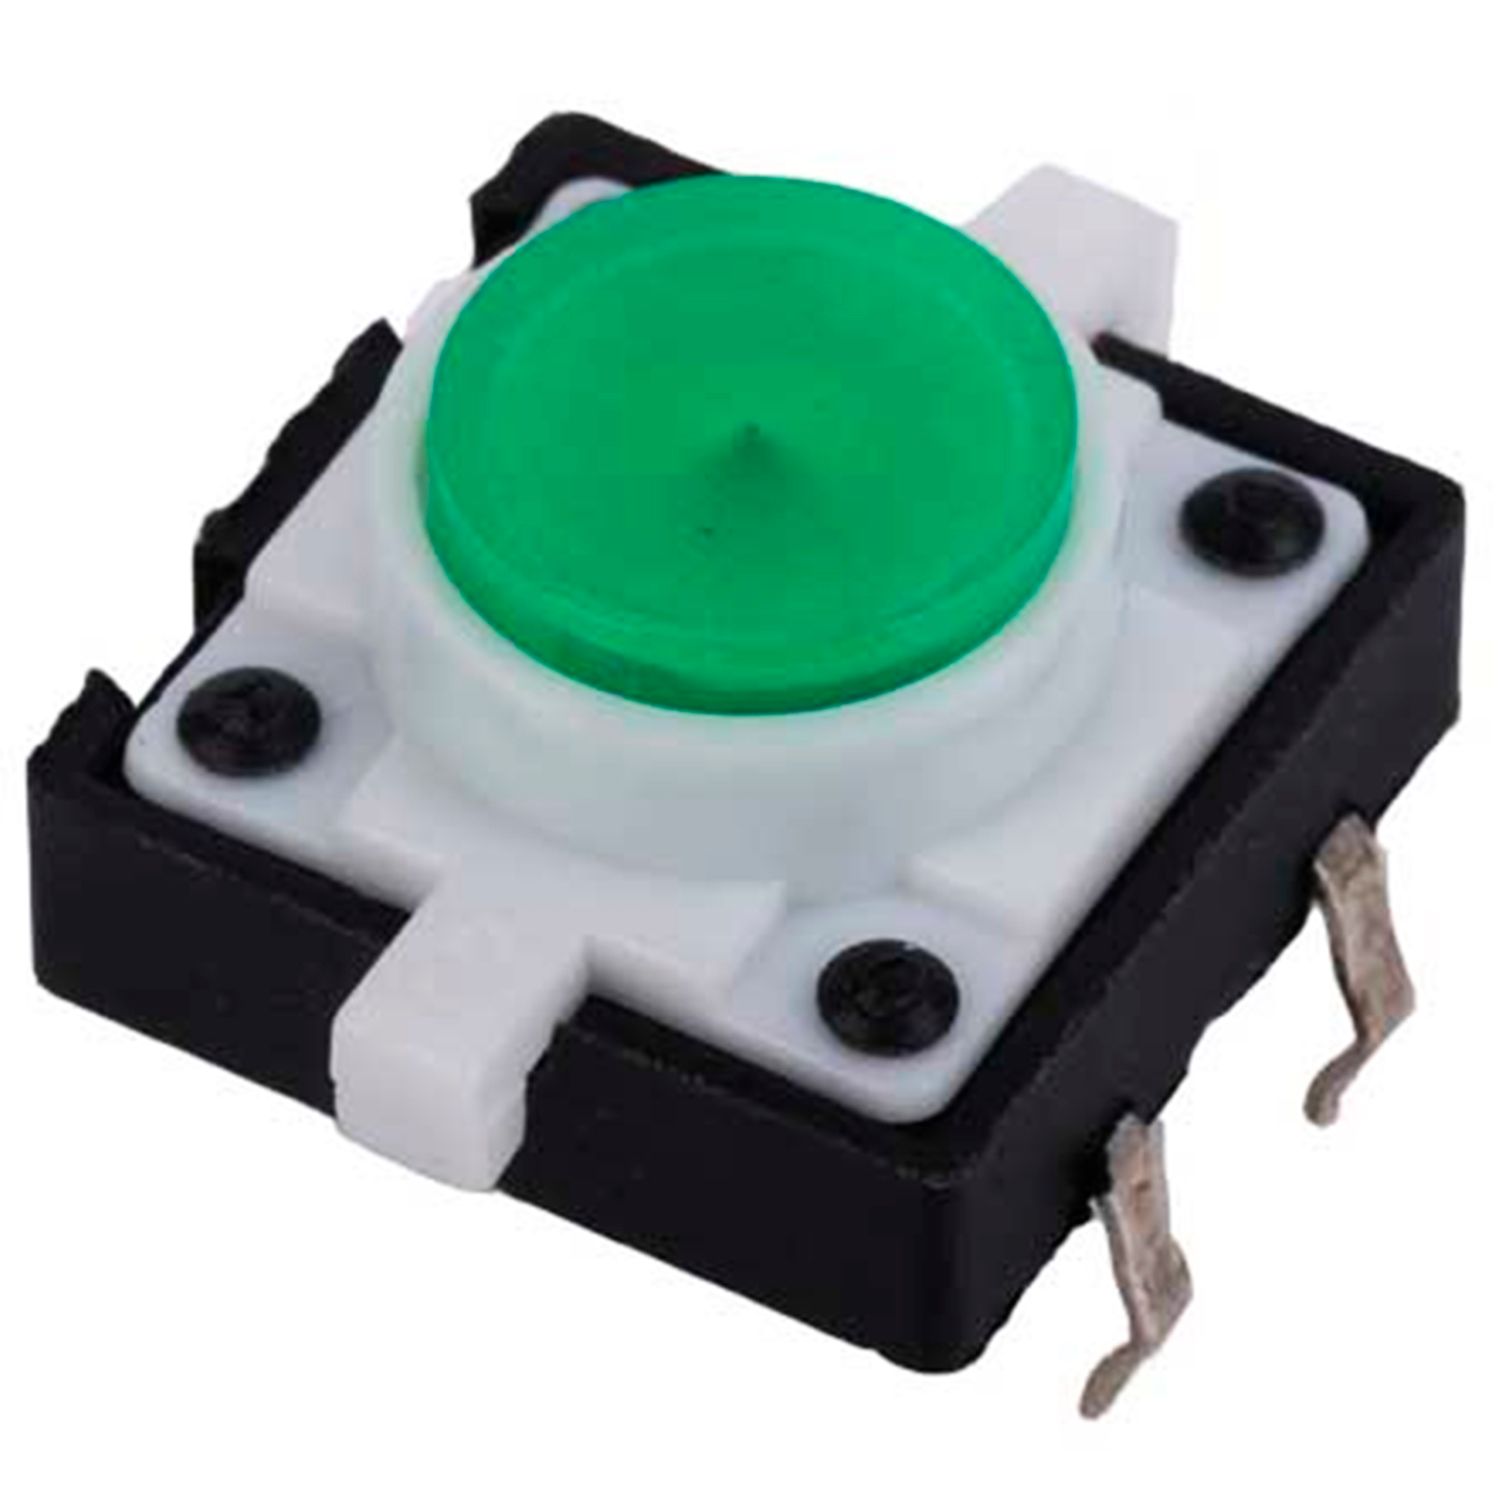 Тактовая кнопка с подсветкой 12x12x7.3 мм, зеленая